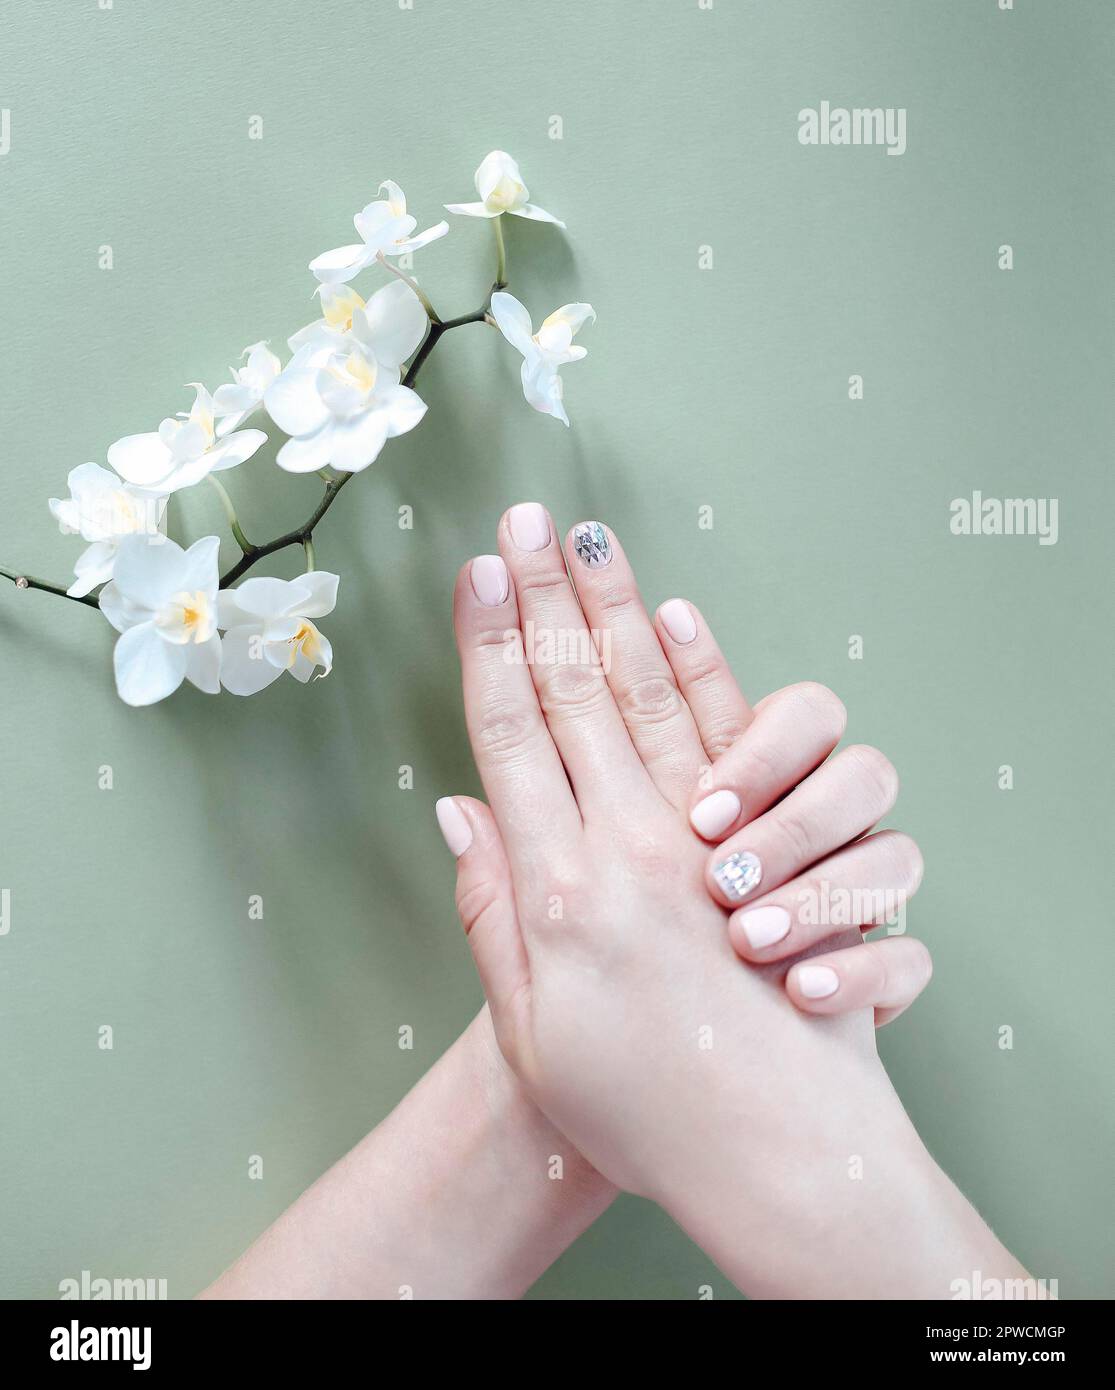 Vista superior de las manos femeninas con flores que muestran una manicura elegante y ordenada sobre un fondo de hormigón Foto de stock